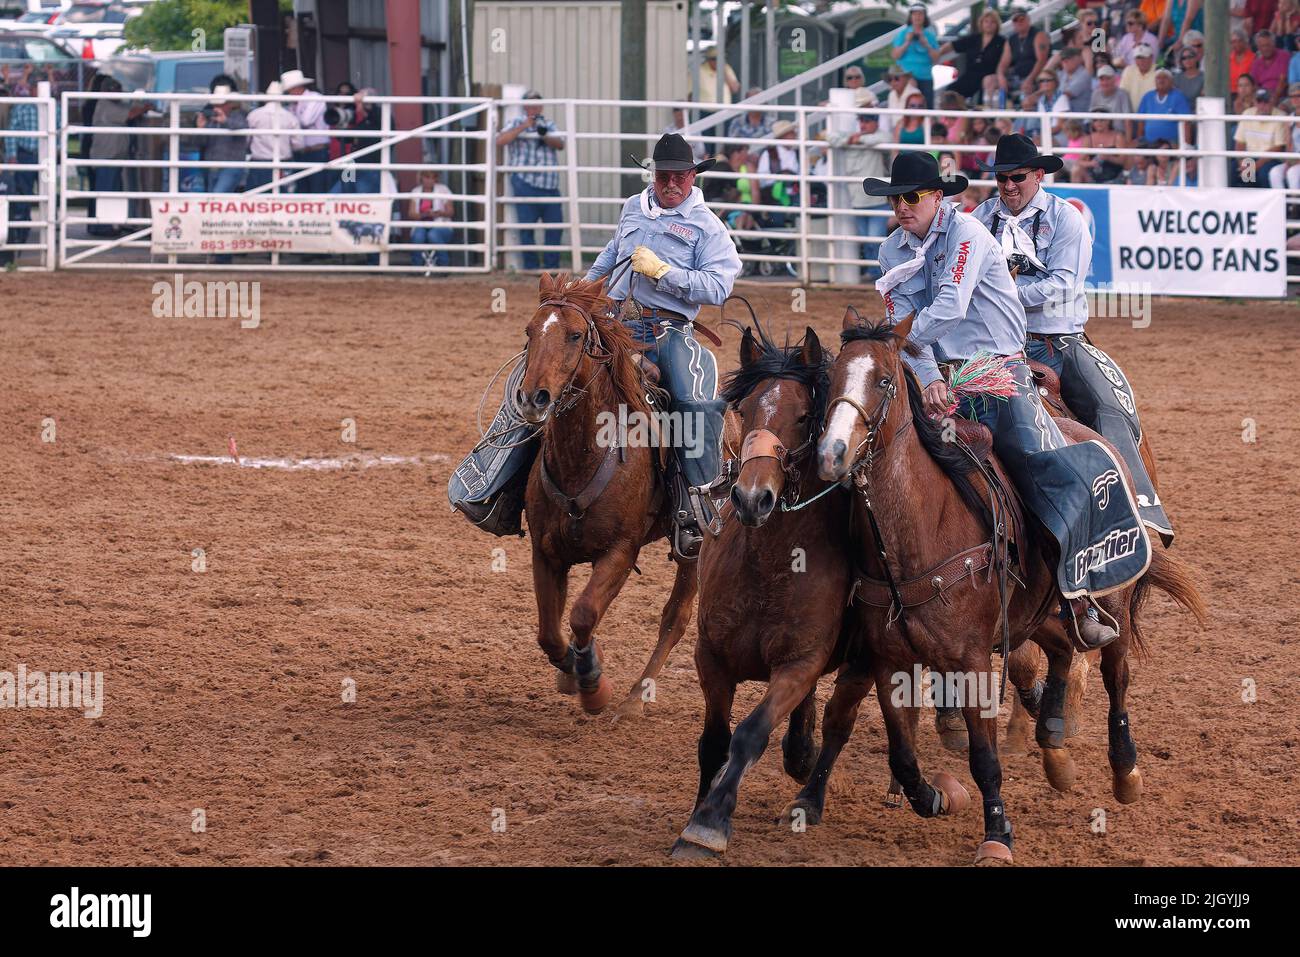 rodeo, 3 hommes corraling cheval, travail, compétence, mouvement, spectateurs, concours, compétition, animal, personnes, foule, Floride ; Arcadia ; FL Banque D'Images